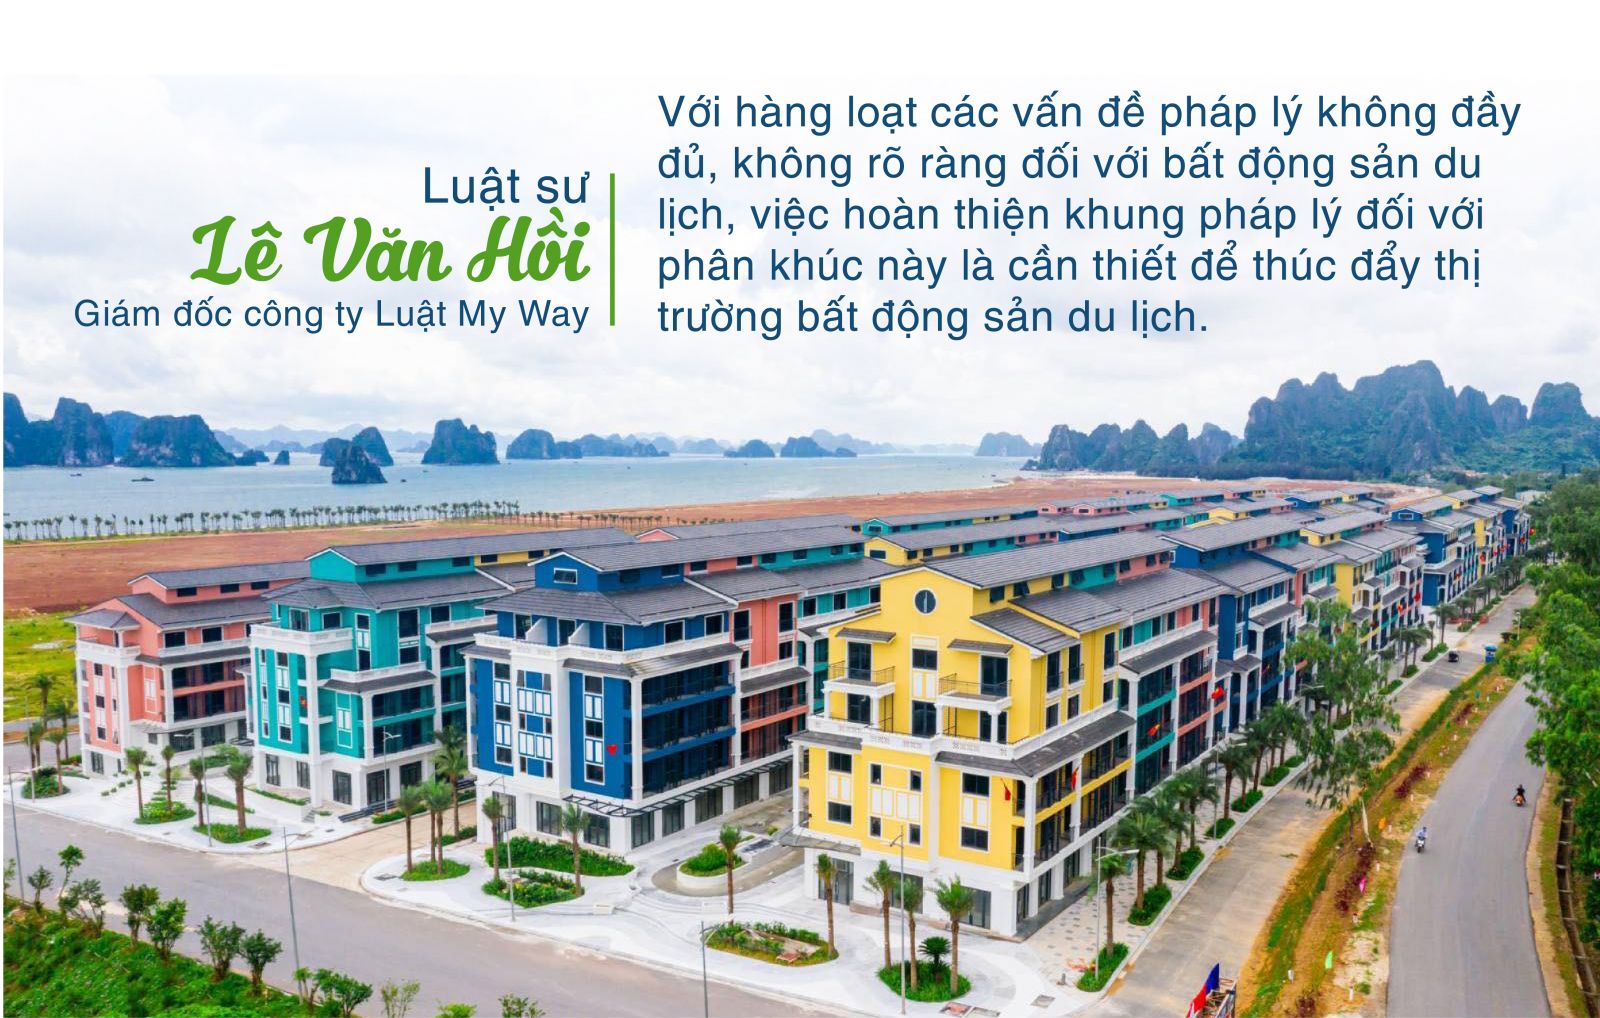 Luật sư Lê Văn Hồi nói về thị trường bất động sản du lịch